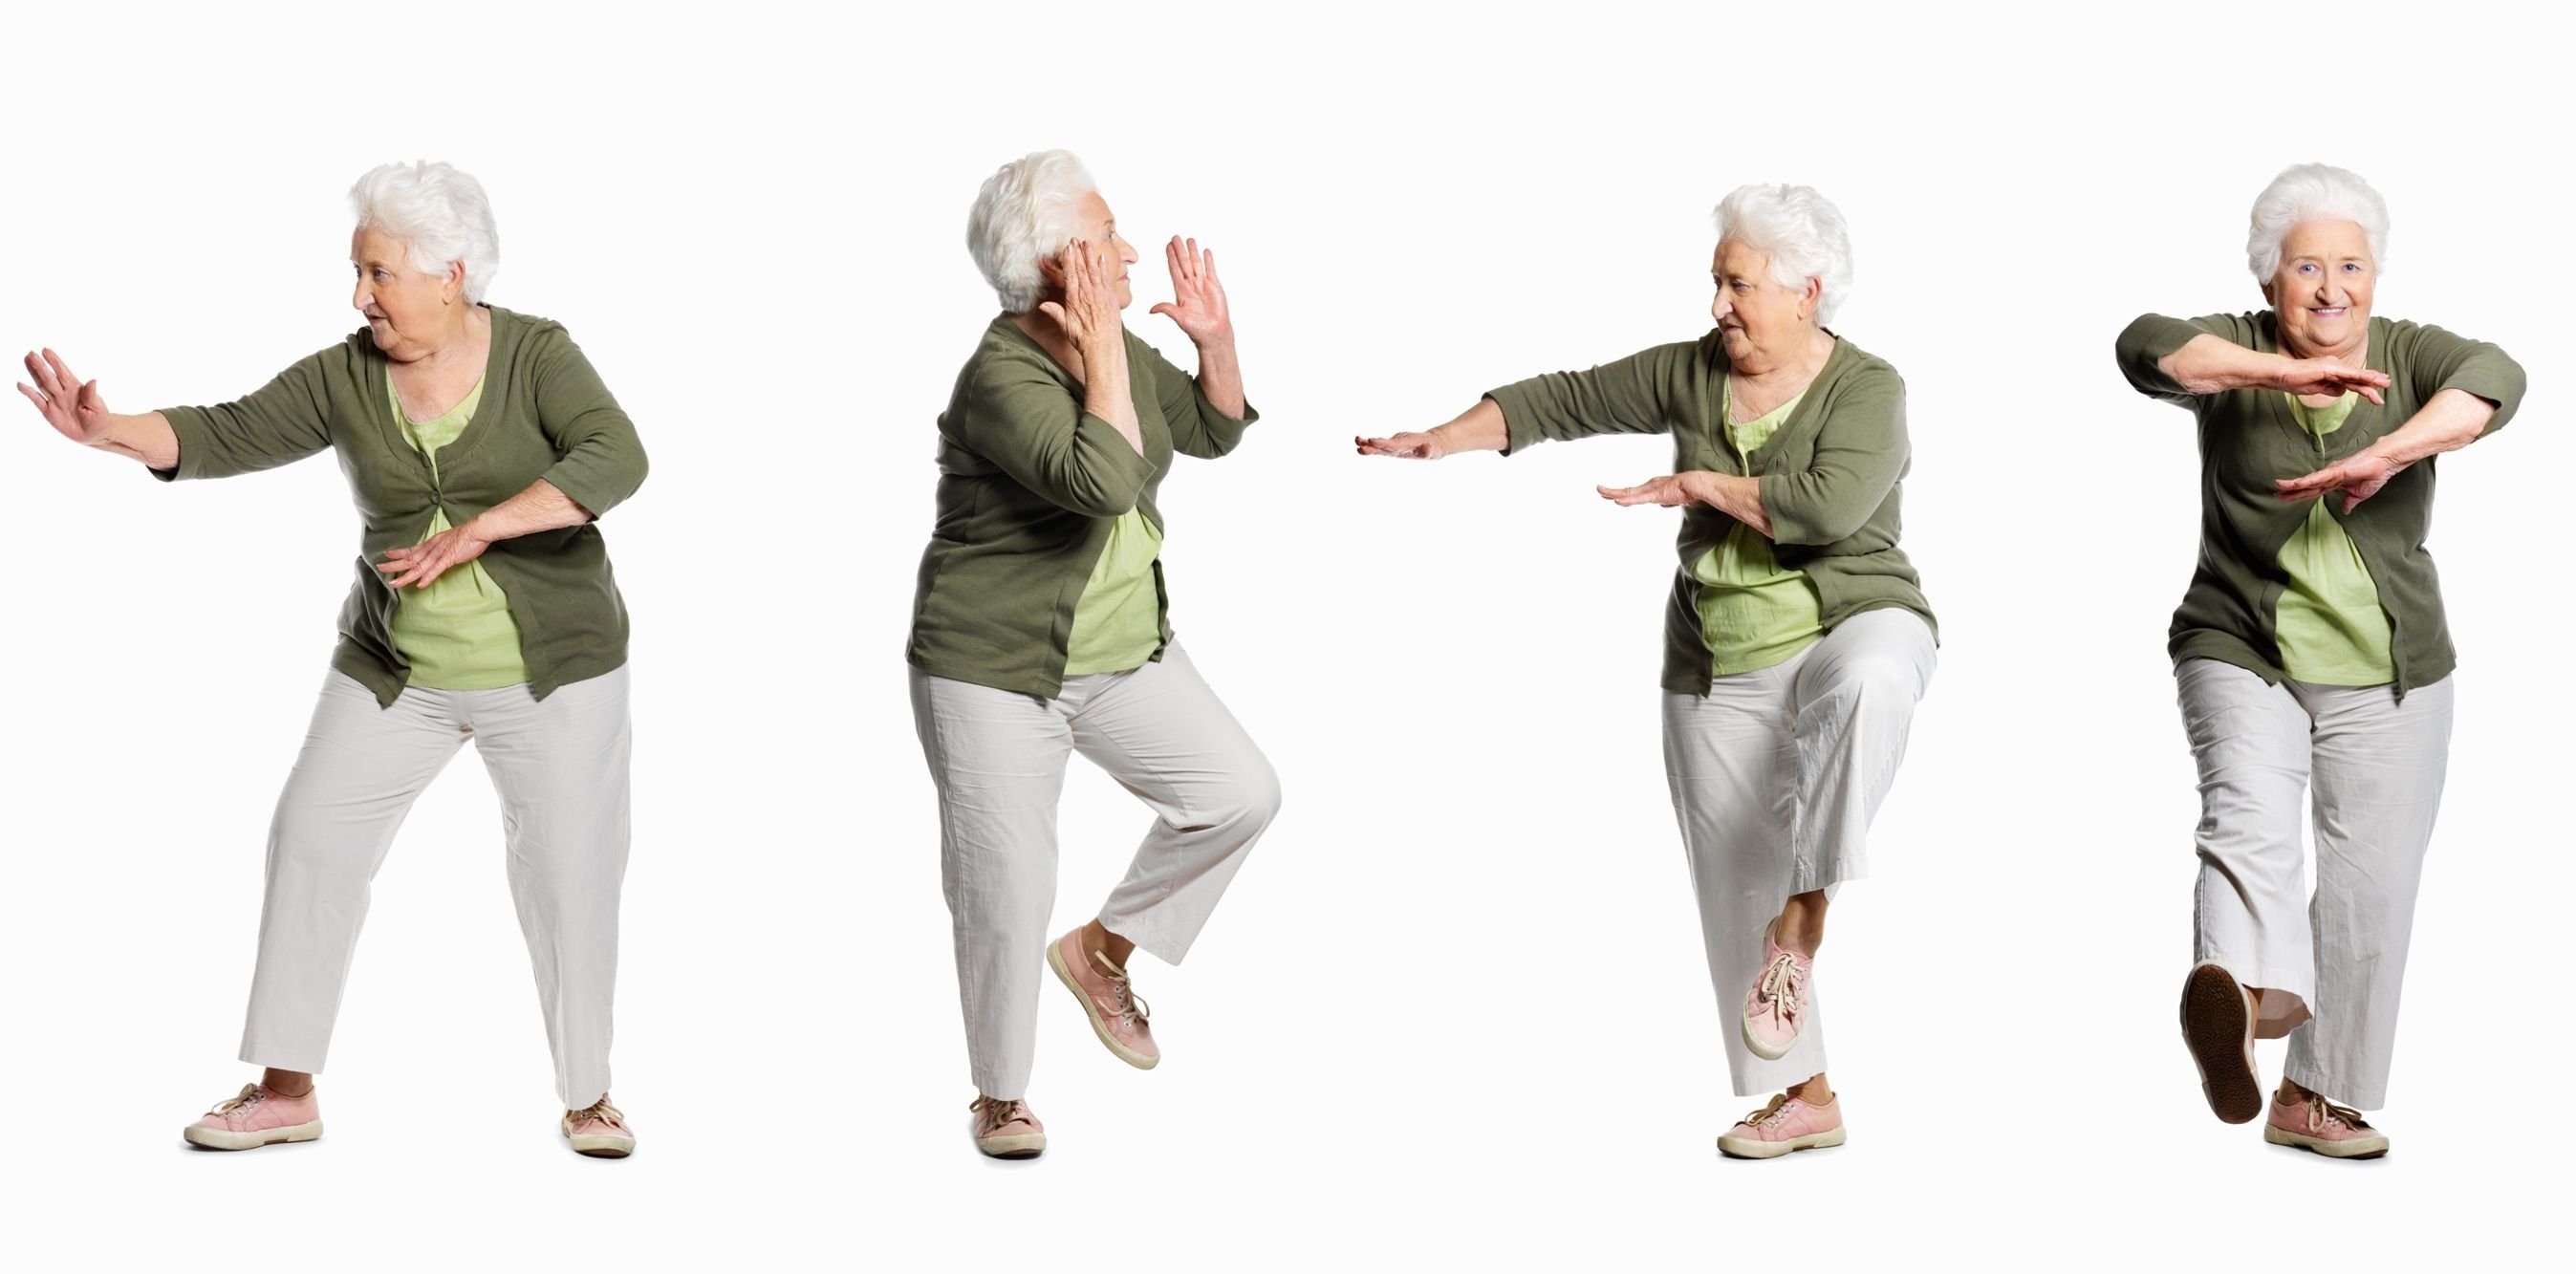 Проекты направленные на пожилых людей. Физкультура для пожилых. Цигун для пожилых людей. Физическая активность пожилых людей. Счастливые пожилые люди.